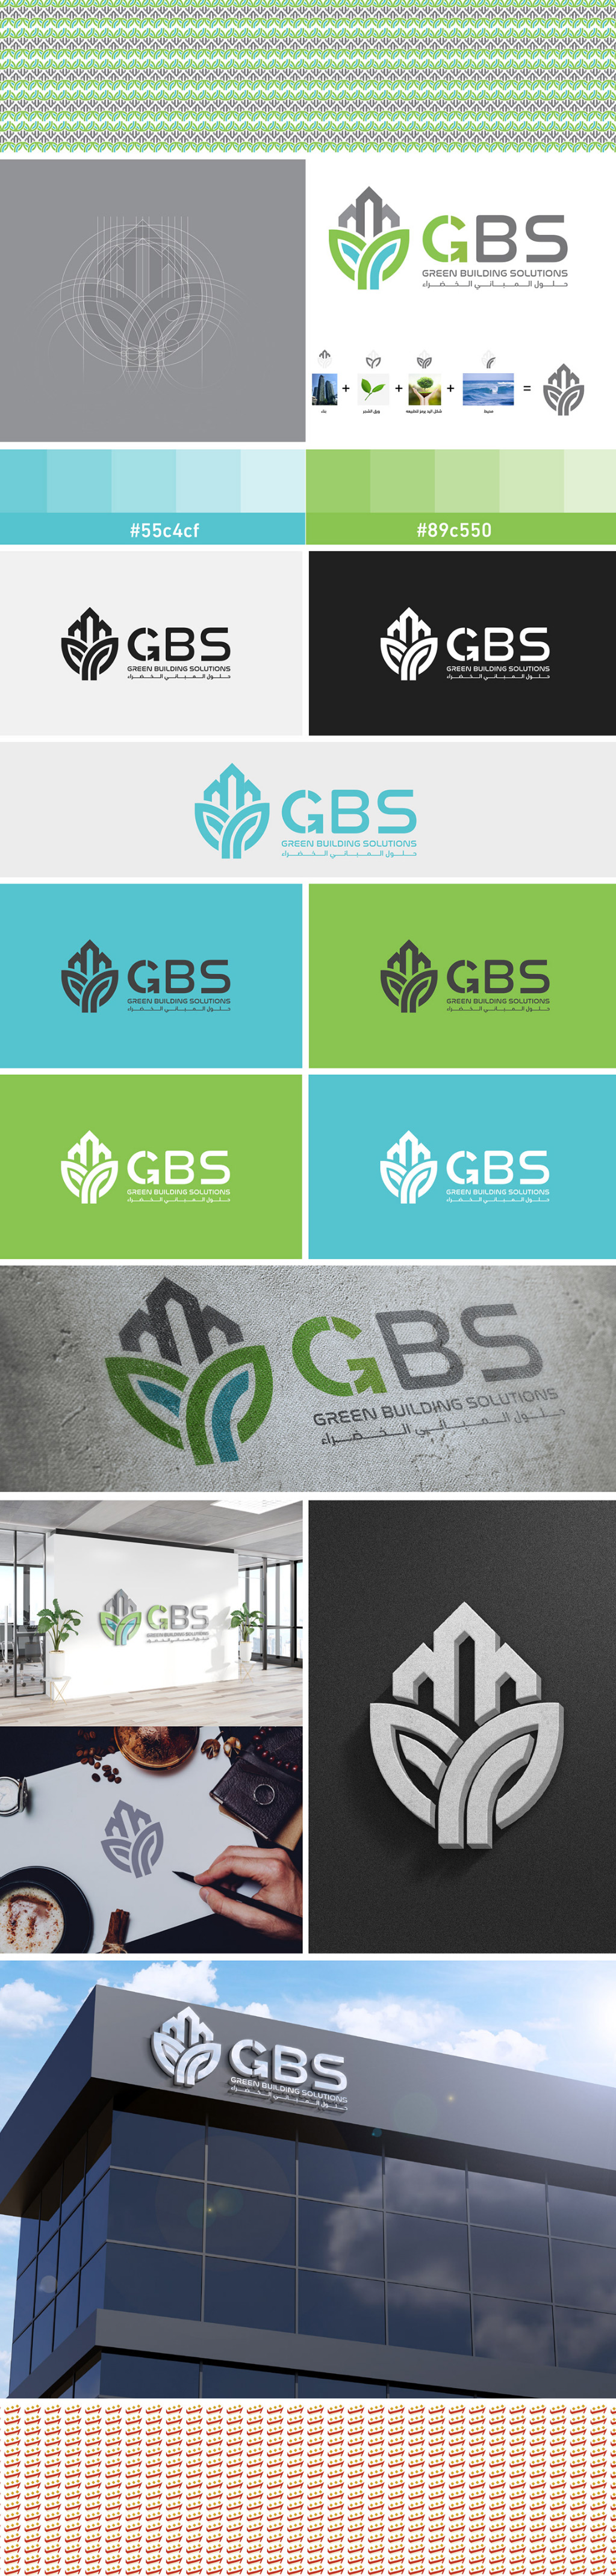 تصميم هوية حلول المباني الخضراء GBS